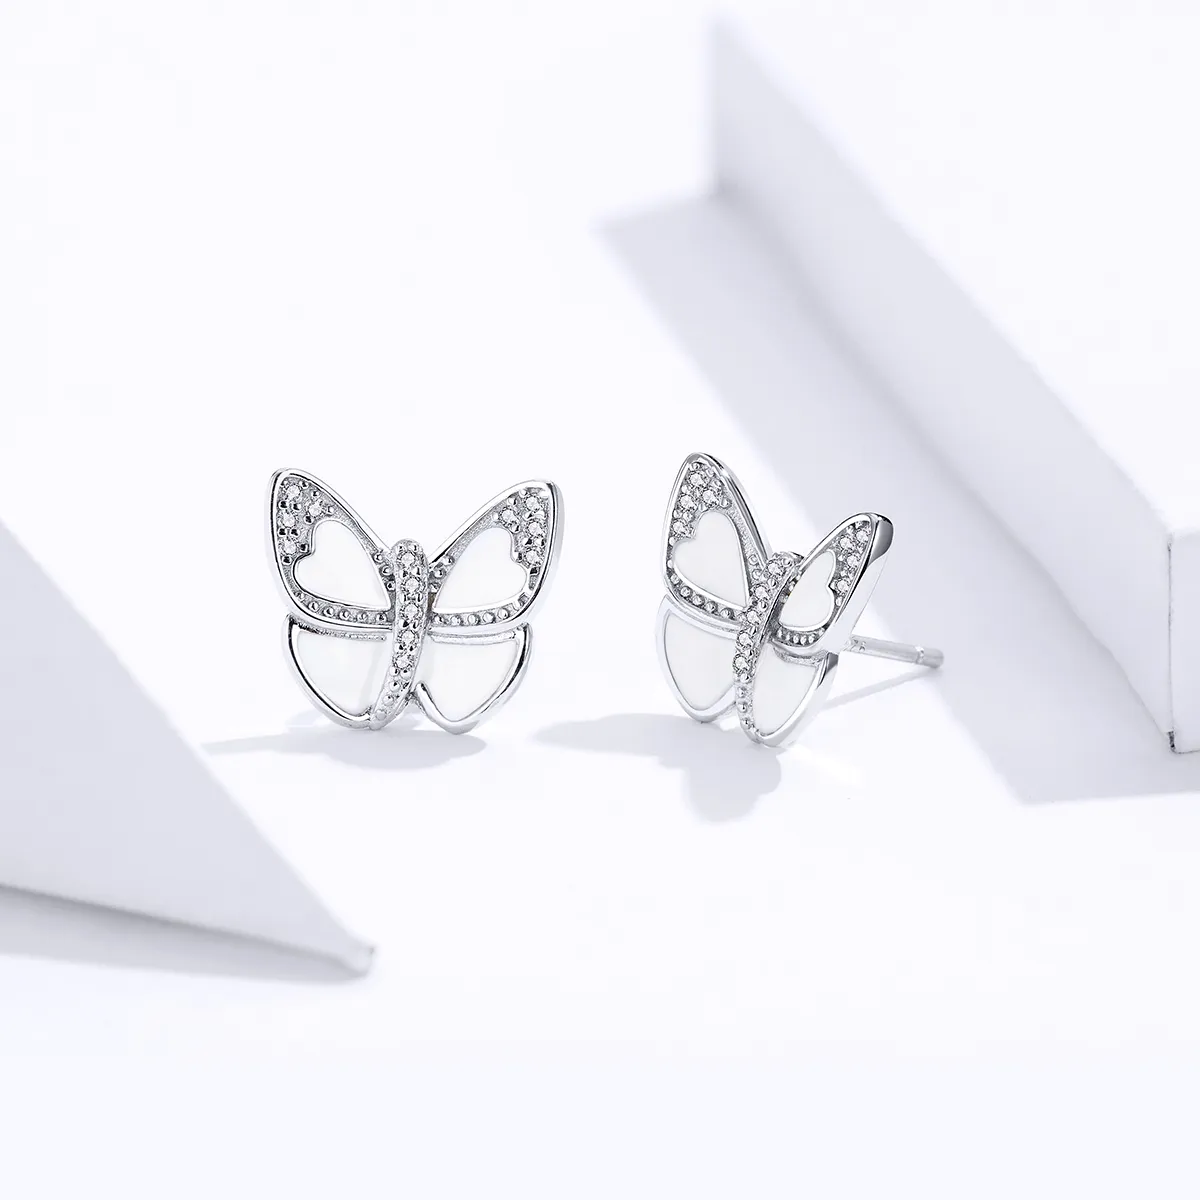 Cercei Tip Pandora cu Fluture alb din argint - SCE876